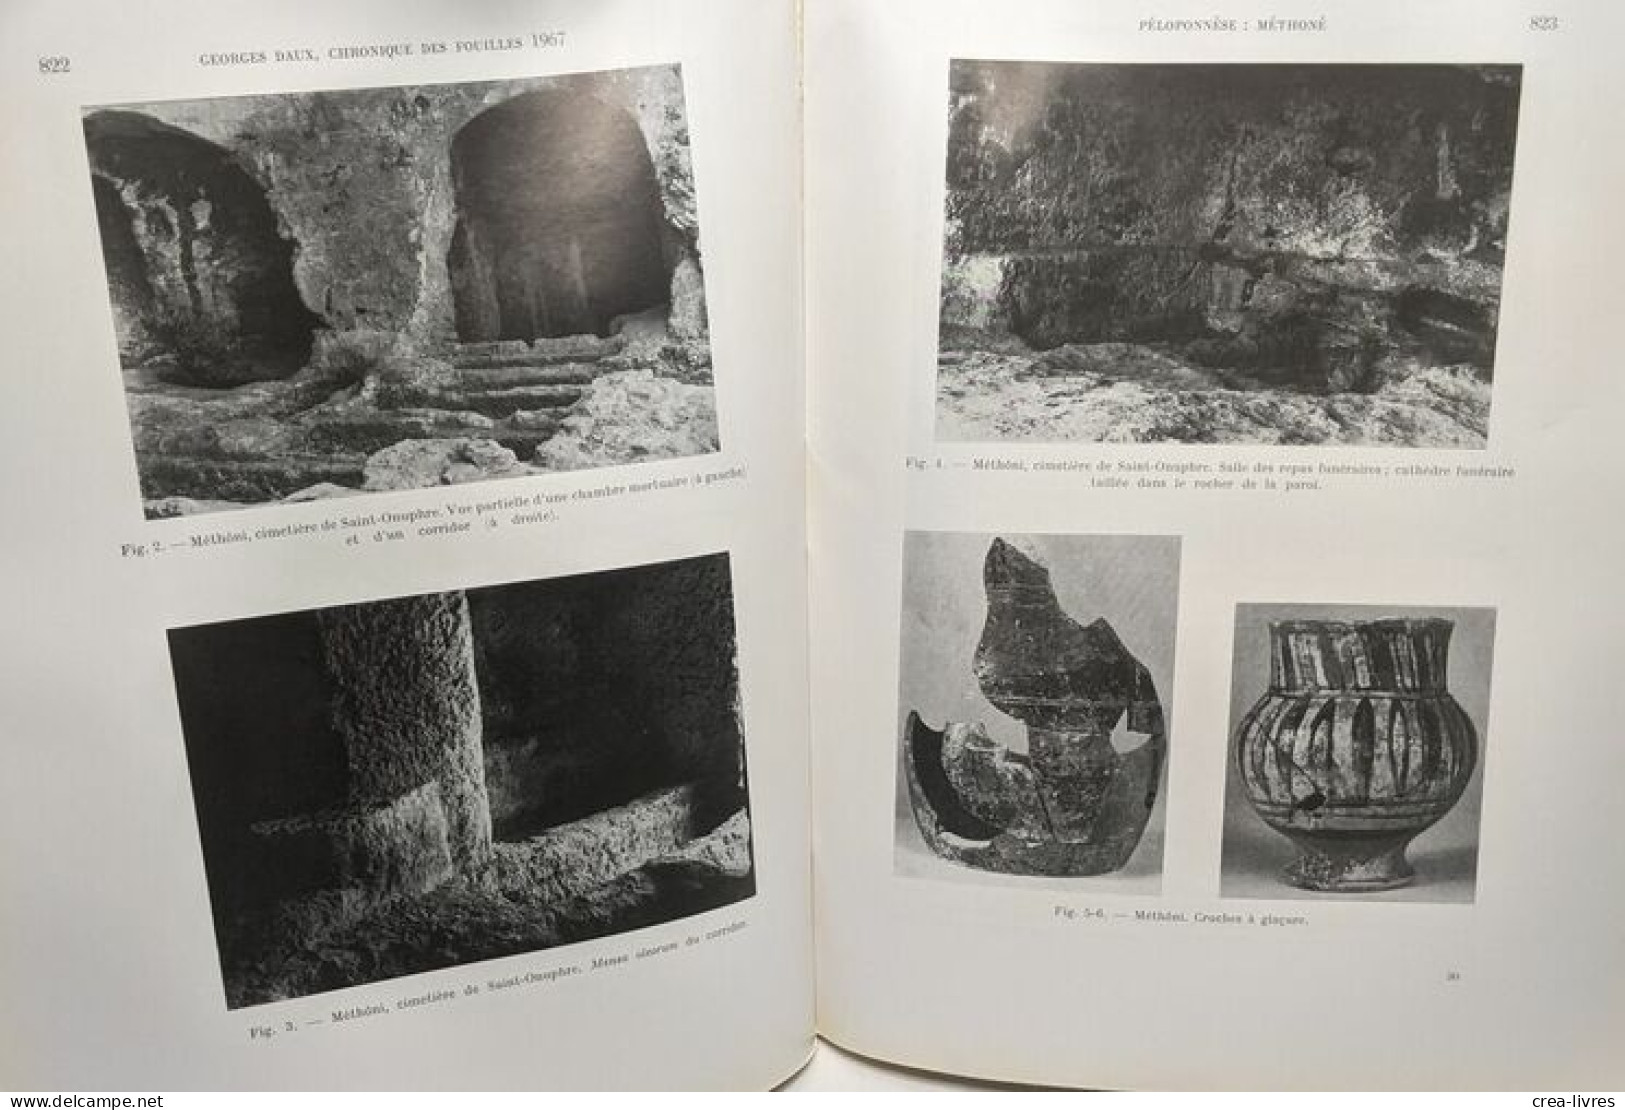 Chronique des fouilles et découvertes archéologiques en Grèce - 10 années entre 1958 et 1968 (année 1962 manquante) - Ec